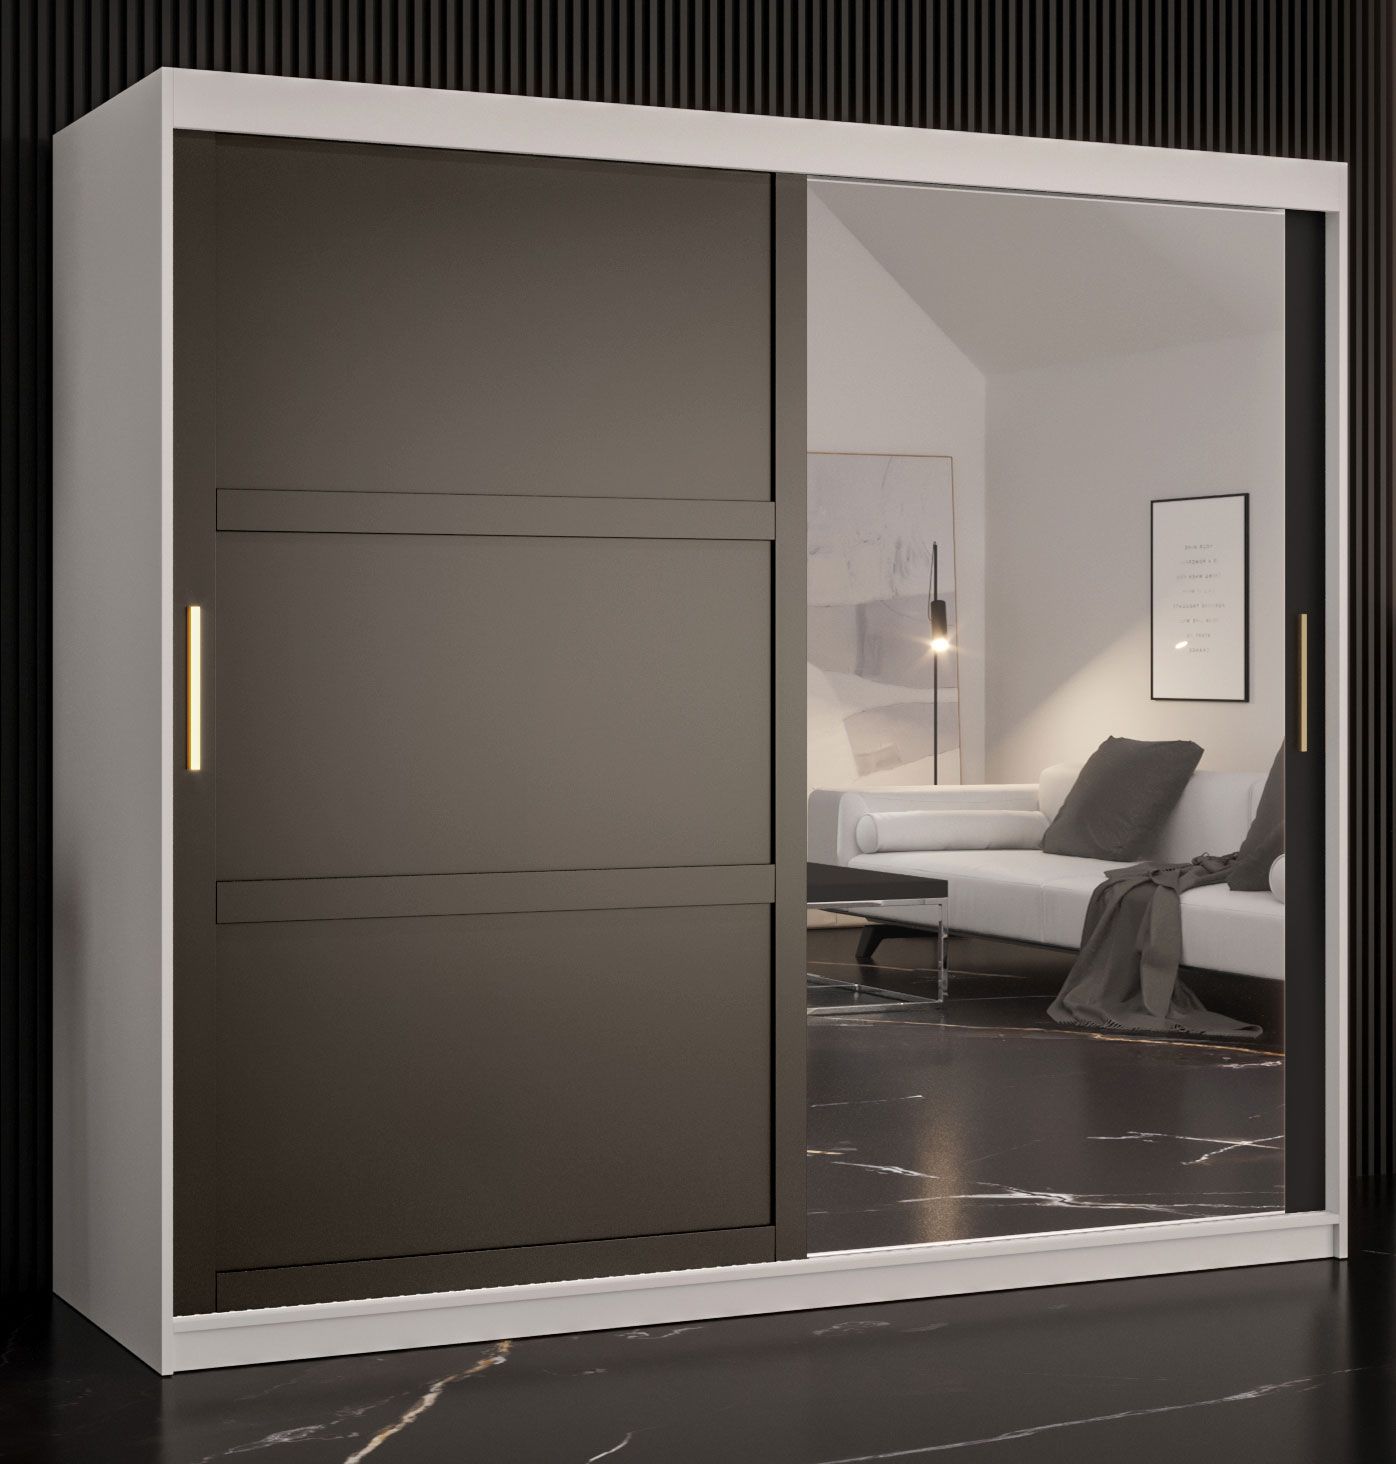 Stijlvolle kledingkast met één deur met spiegel Liskamm 42, kleur: mat wit / mat zwart - afmetingen: 200 x 200 x 62 cm (H x B x D), met 10 vakken en twee kledingstangen